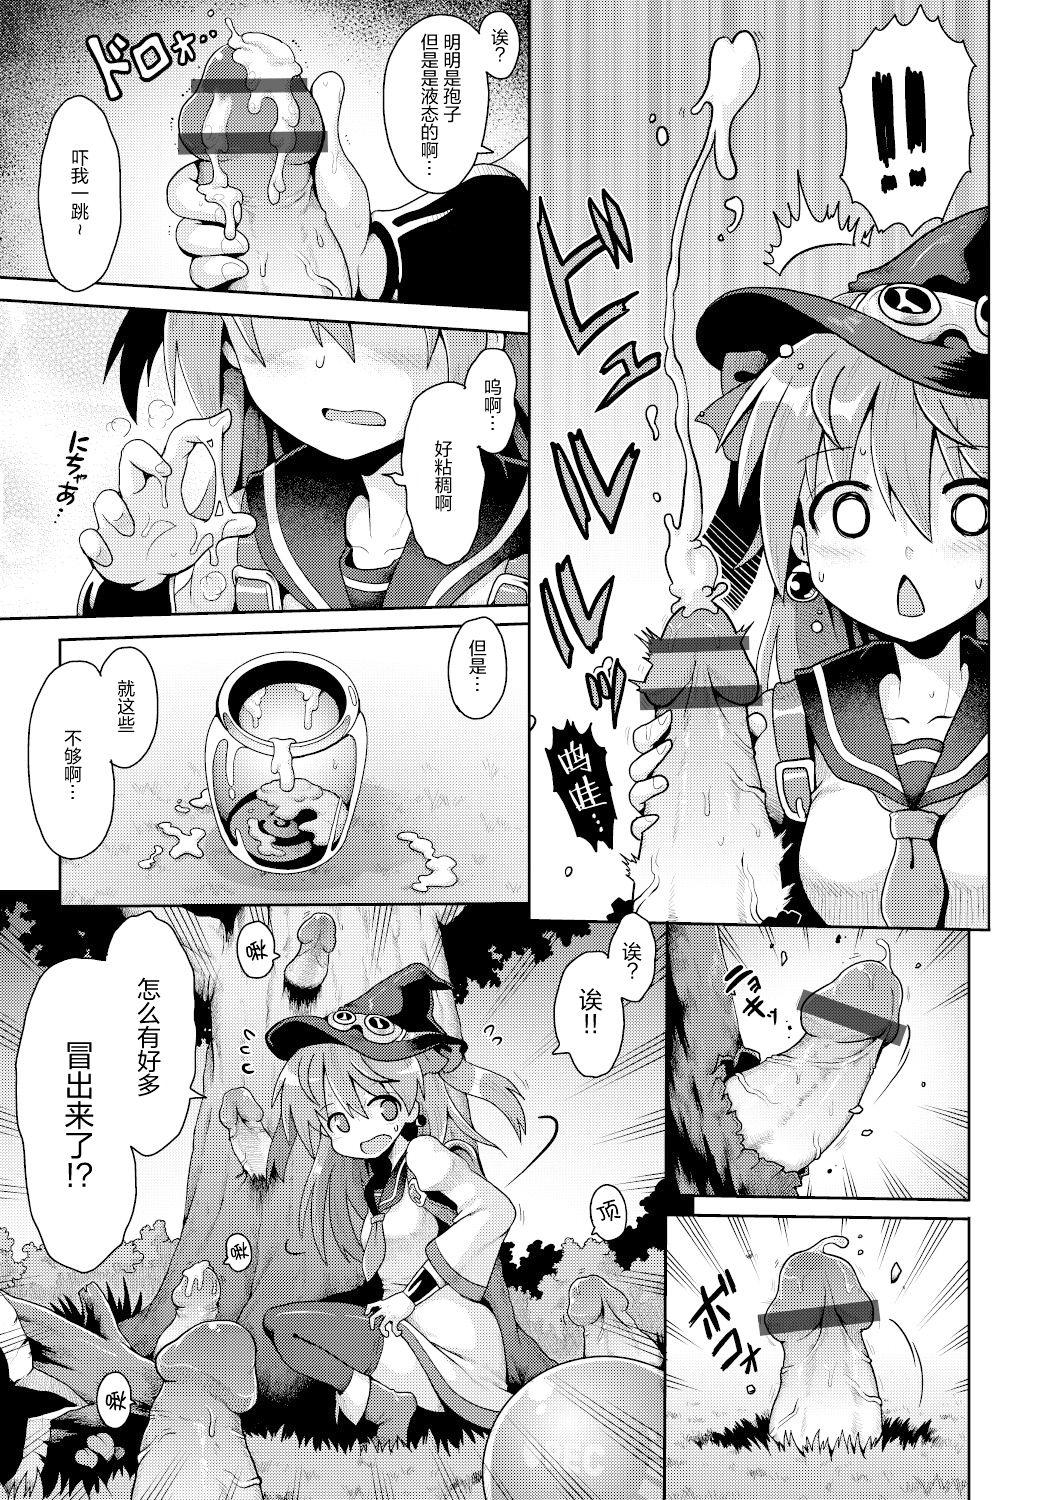 Spying Tensai mado shojo no yuutsu Rub - Page 8